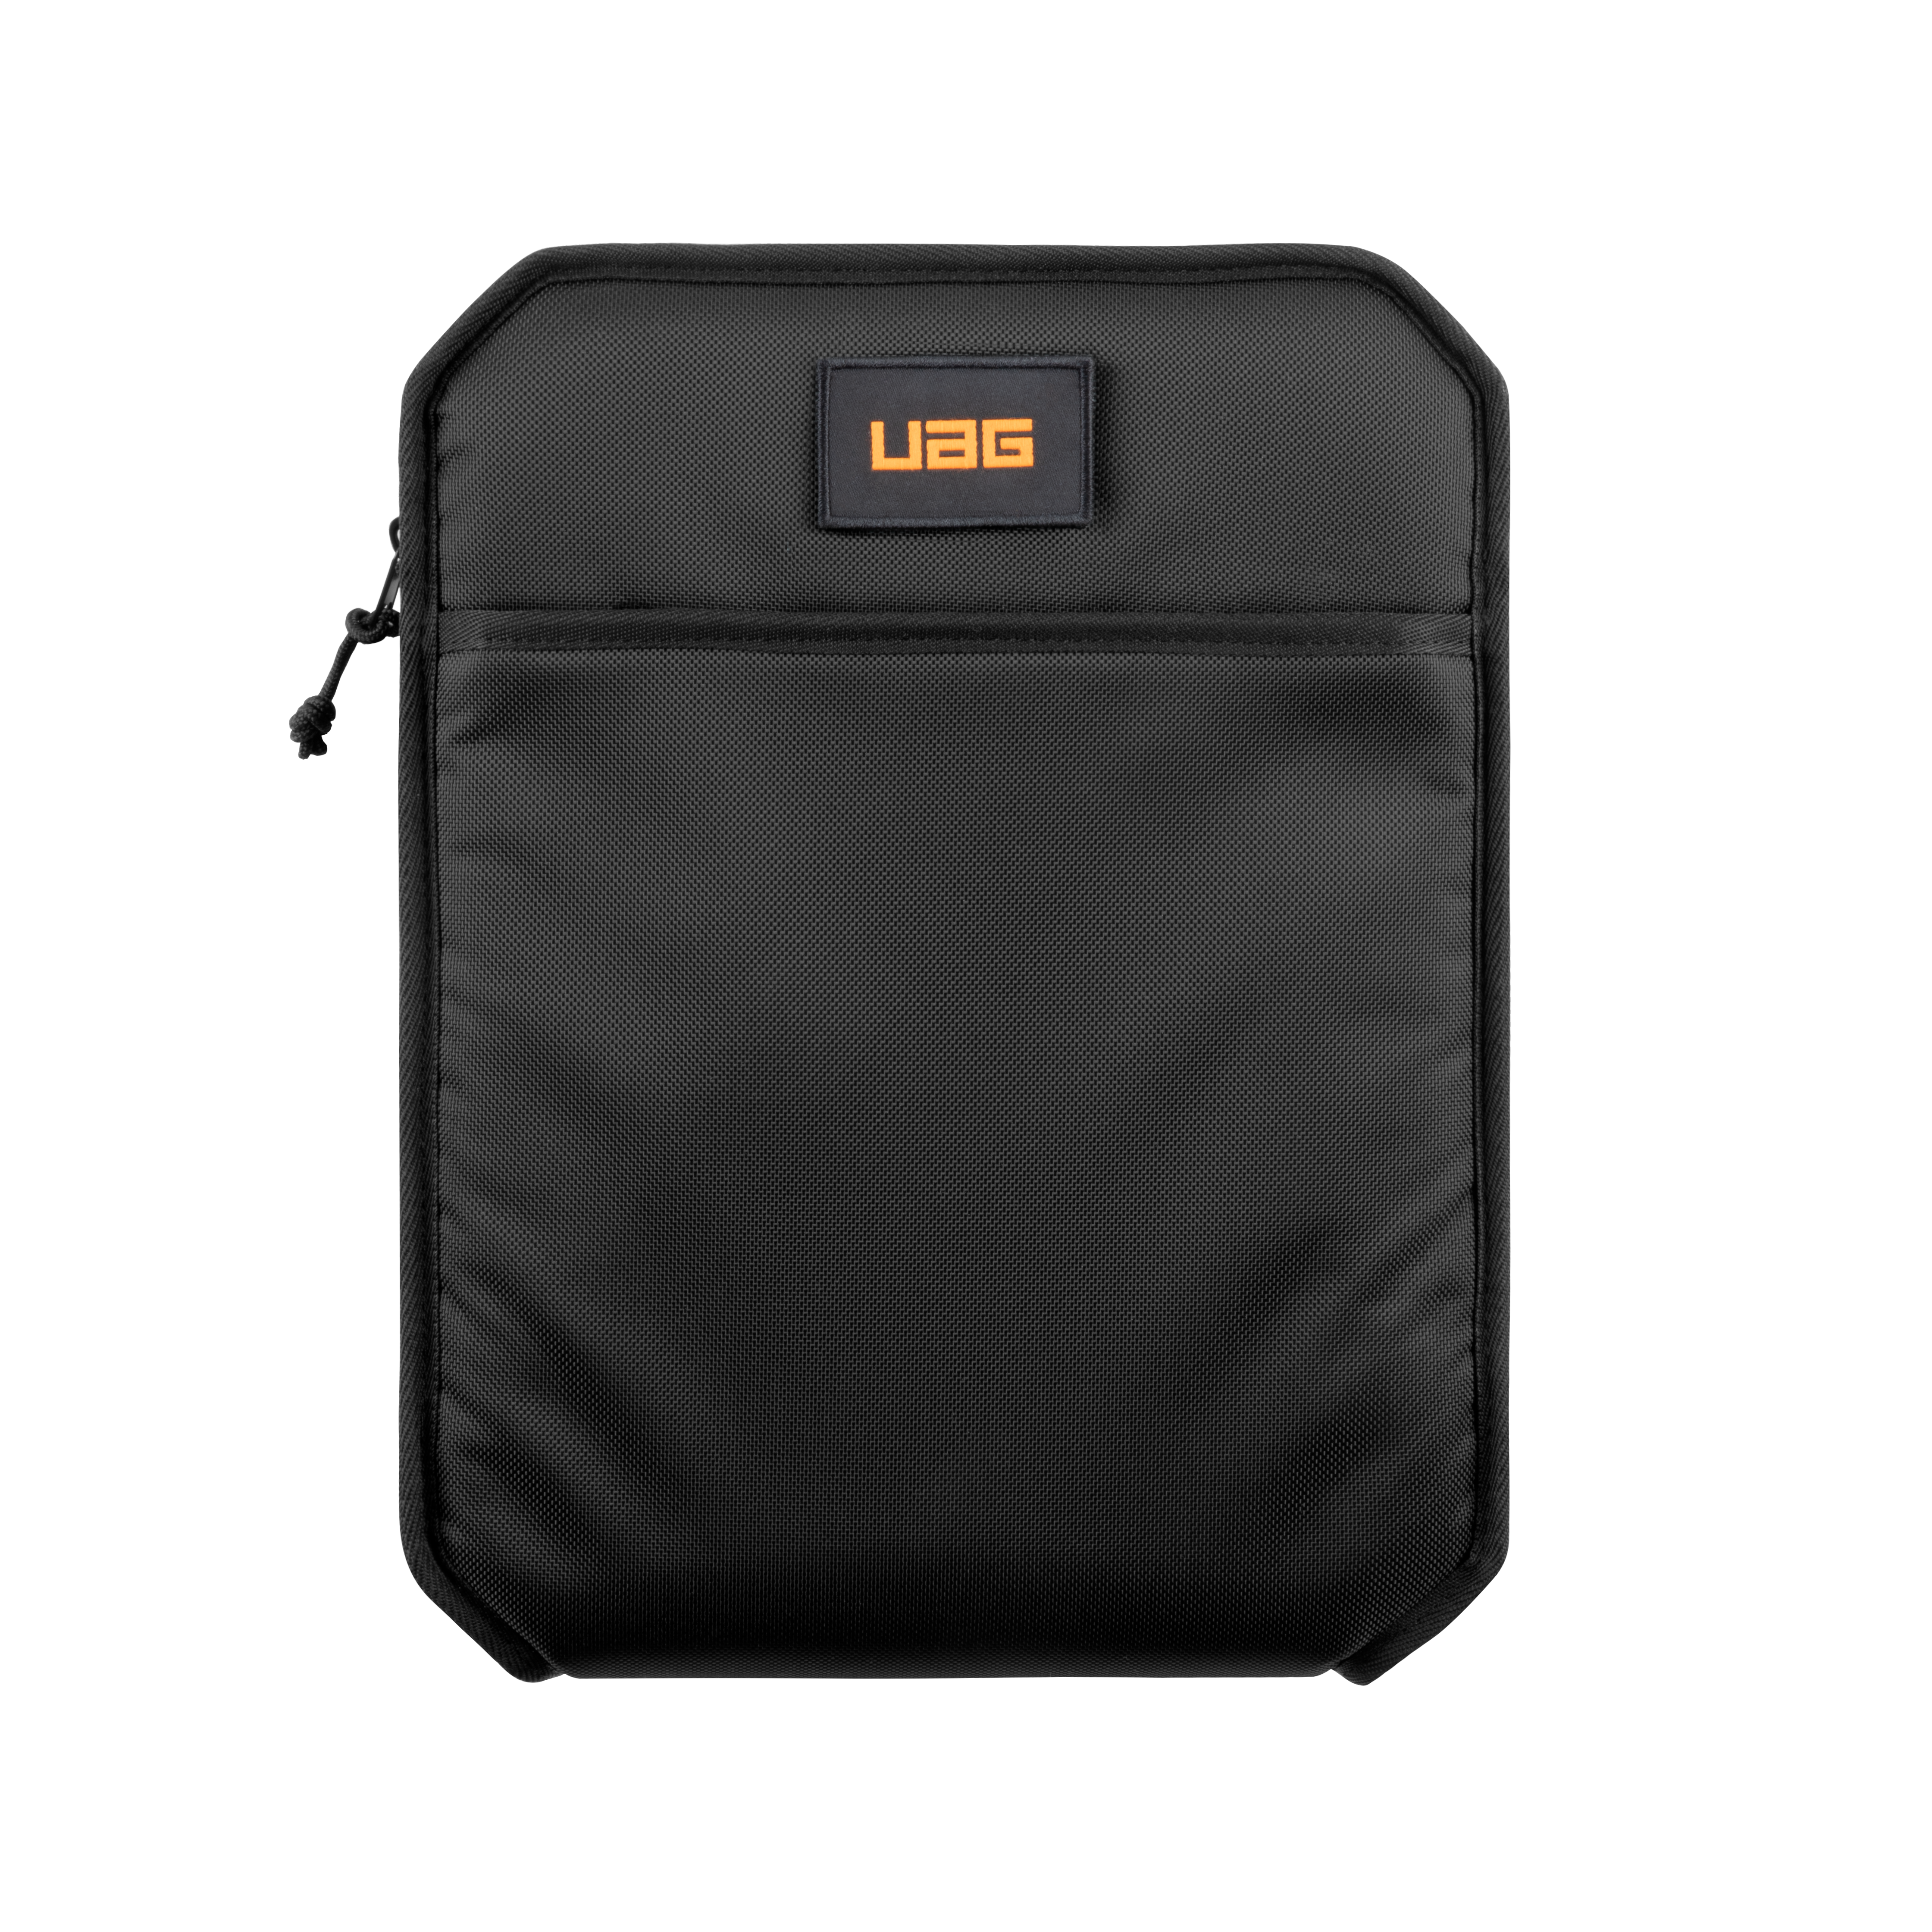 URBAN ARMOR GEAR 840D Tasche Tablet Apple Aktentasche Sleeve Lite Nylon, schwarz Shock für